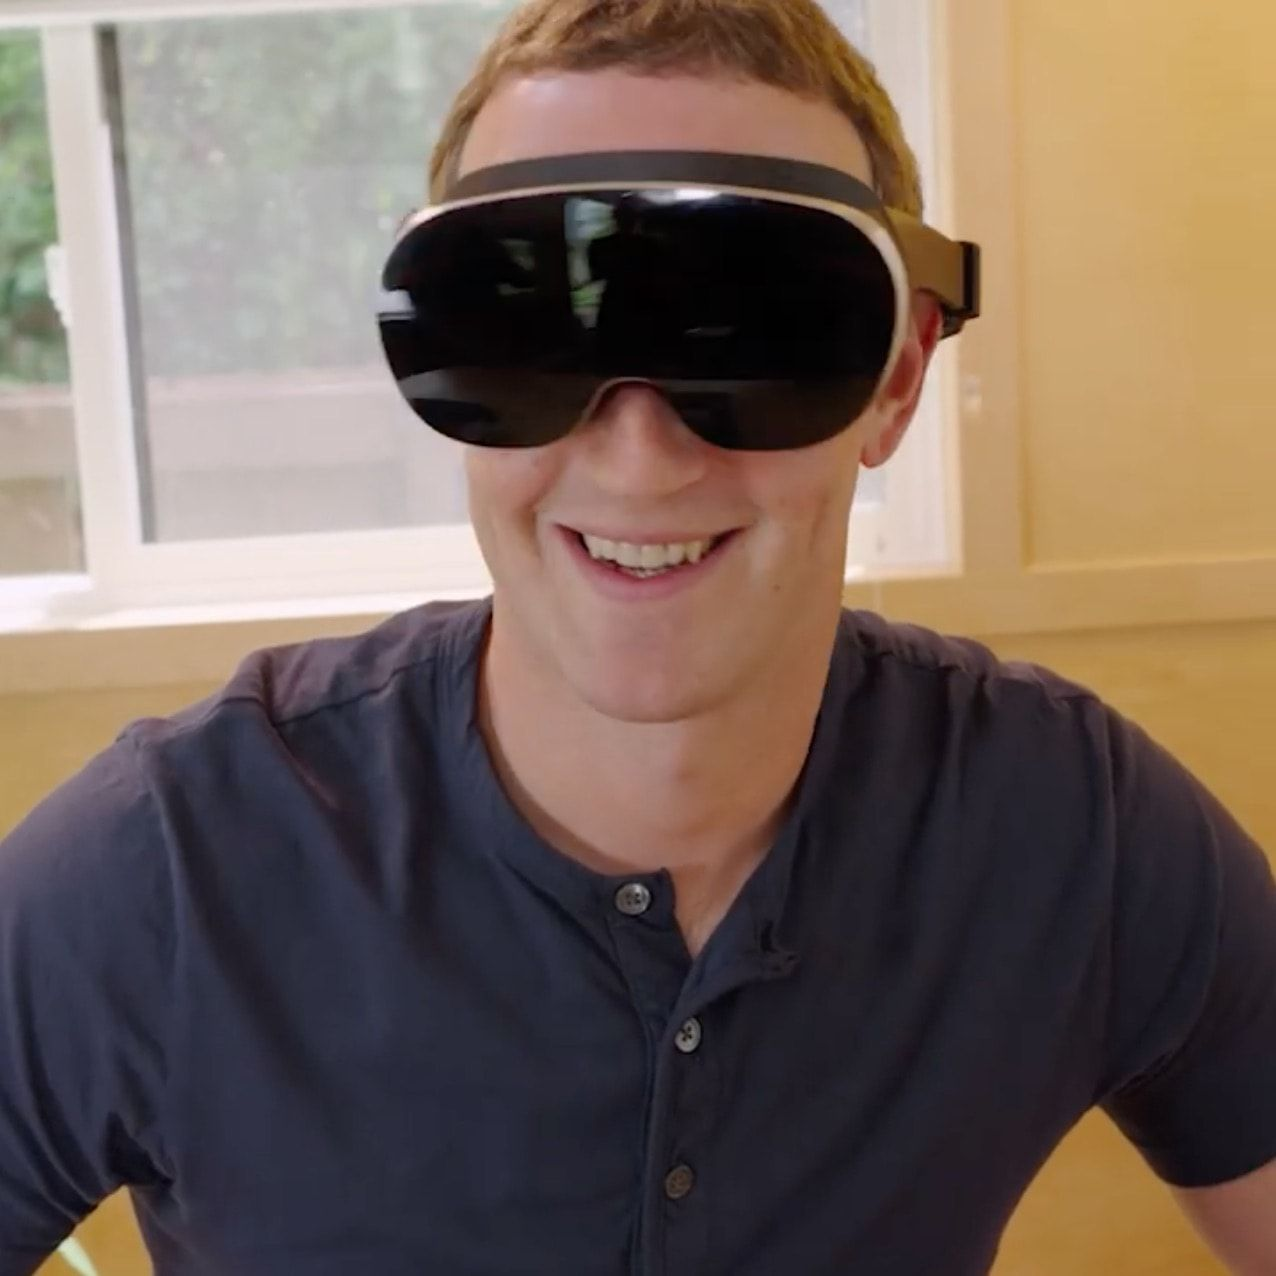 Homem branco, sorridente, com camisa azul escuro com botões, usando um headset de realidade virtual com a frente preta, brilhante.